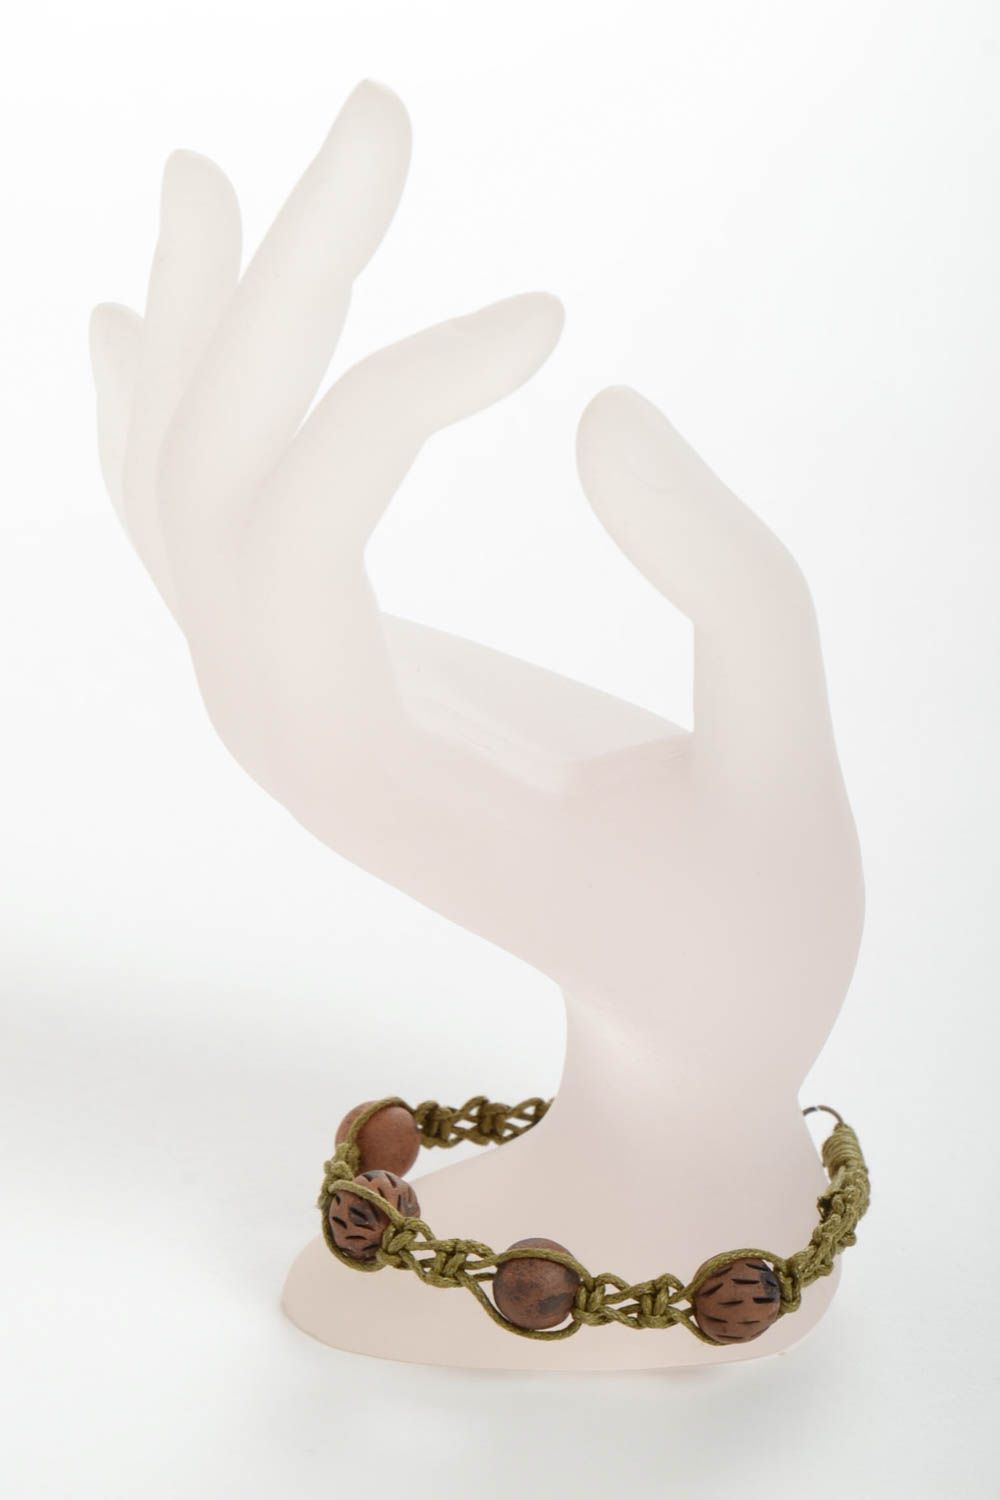 Глиняный браслет ручной работы плетеный из вощеного шнура оригинальный фото 3